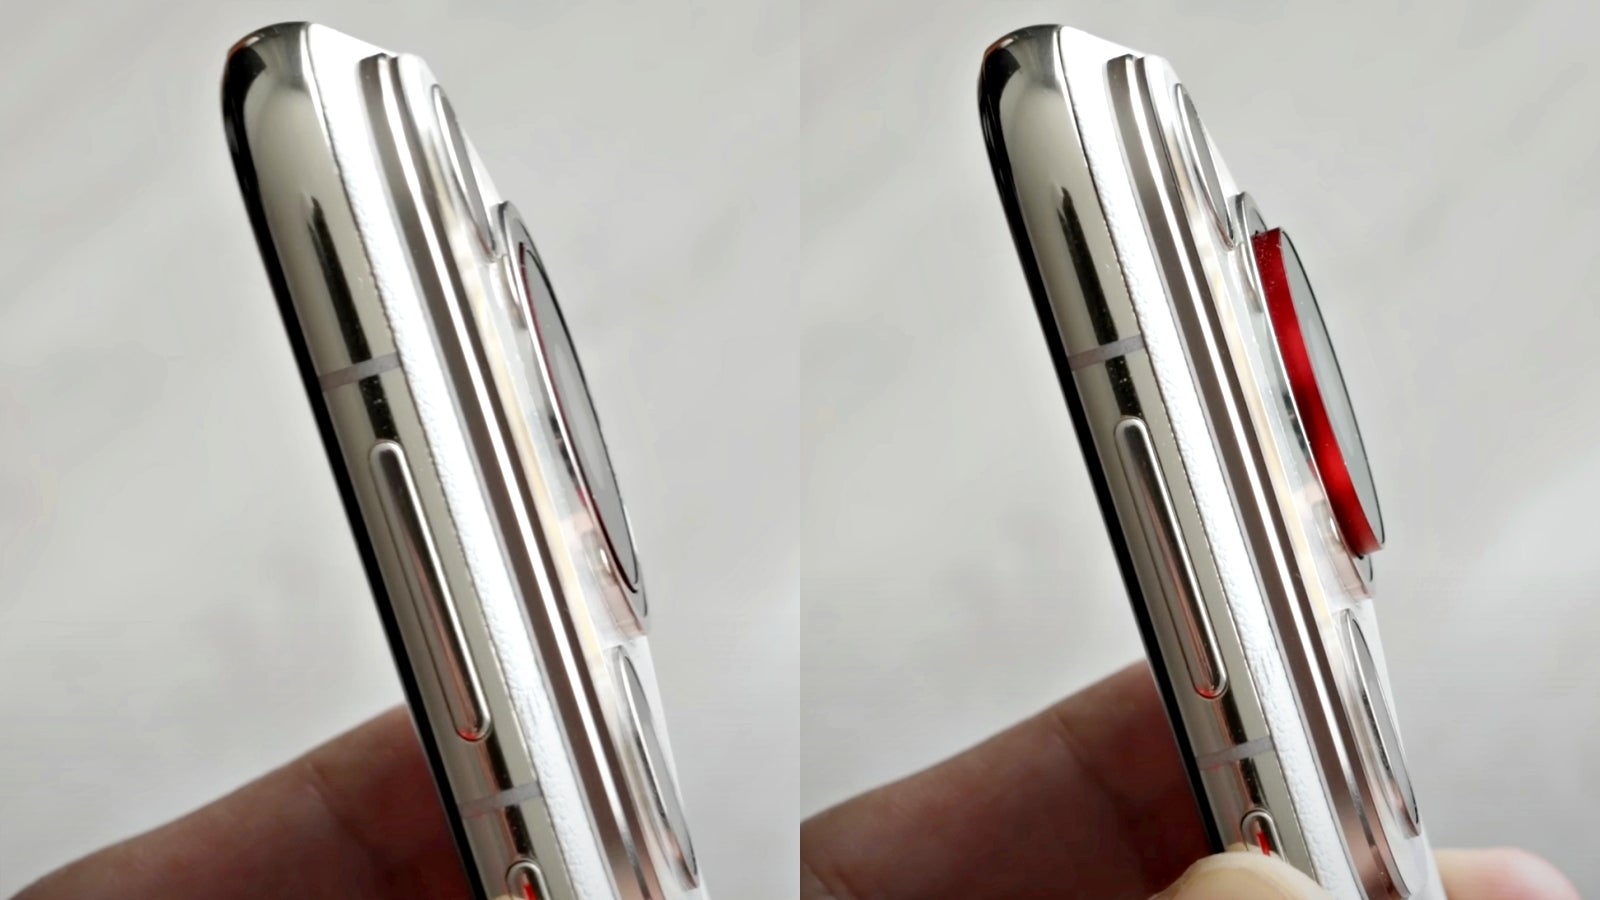 Thiết kế thụt thò trên Huawei Pura 70 Ultra giúp máy mỏng hơn bình thường khoảng 2 mm. Ảnh: Phone Arena